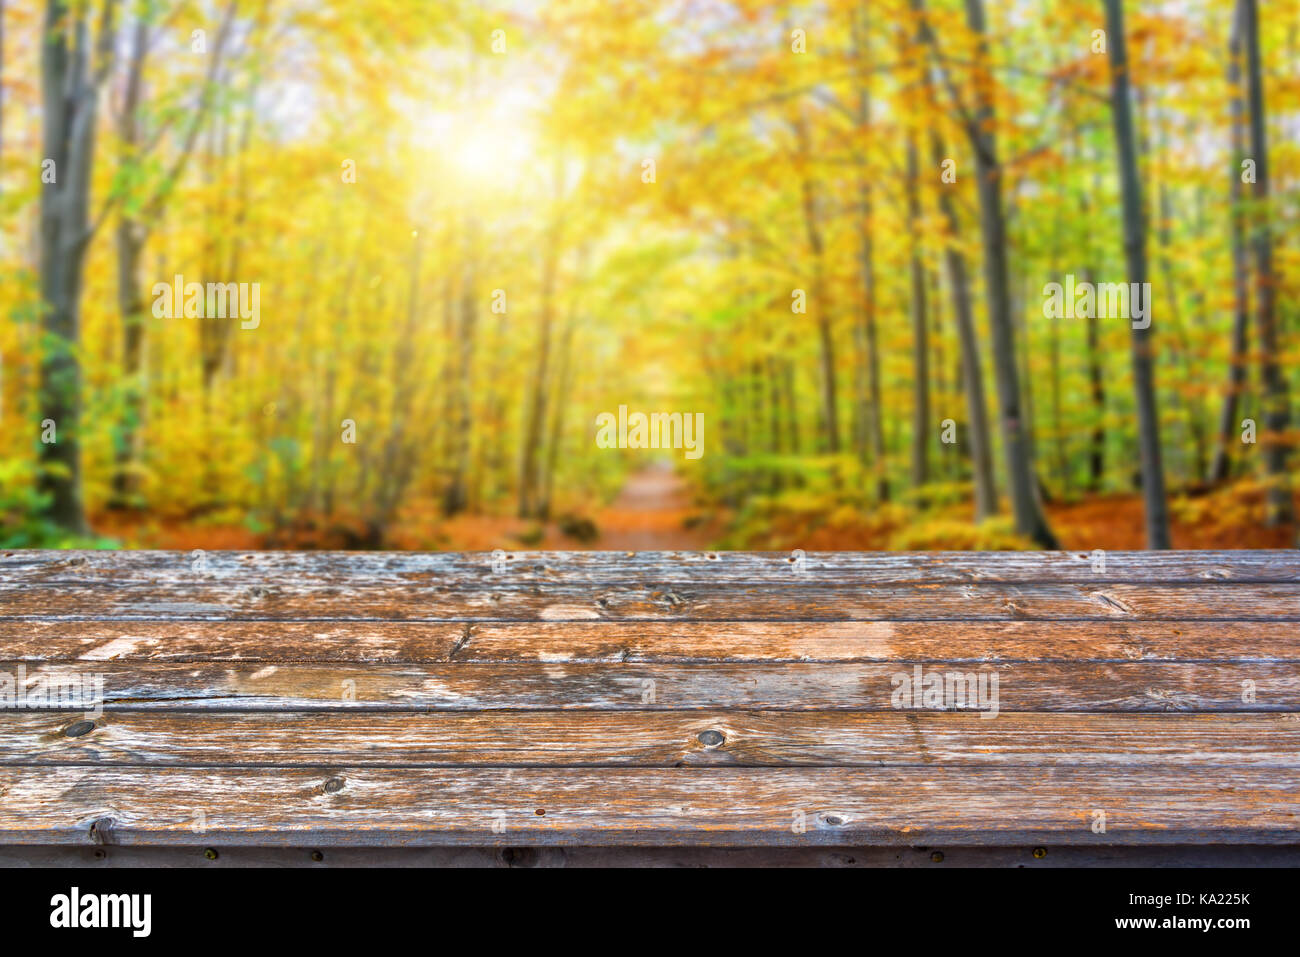 Leere Holz- Tischplatte, sonnigen Wald im Herbst Hintergrund, bereit für die Anzeige oder Montage ihrer Produkte zu verwenden Stockfoto